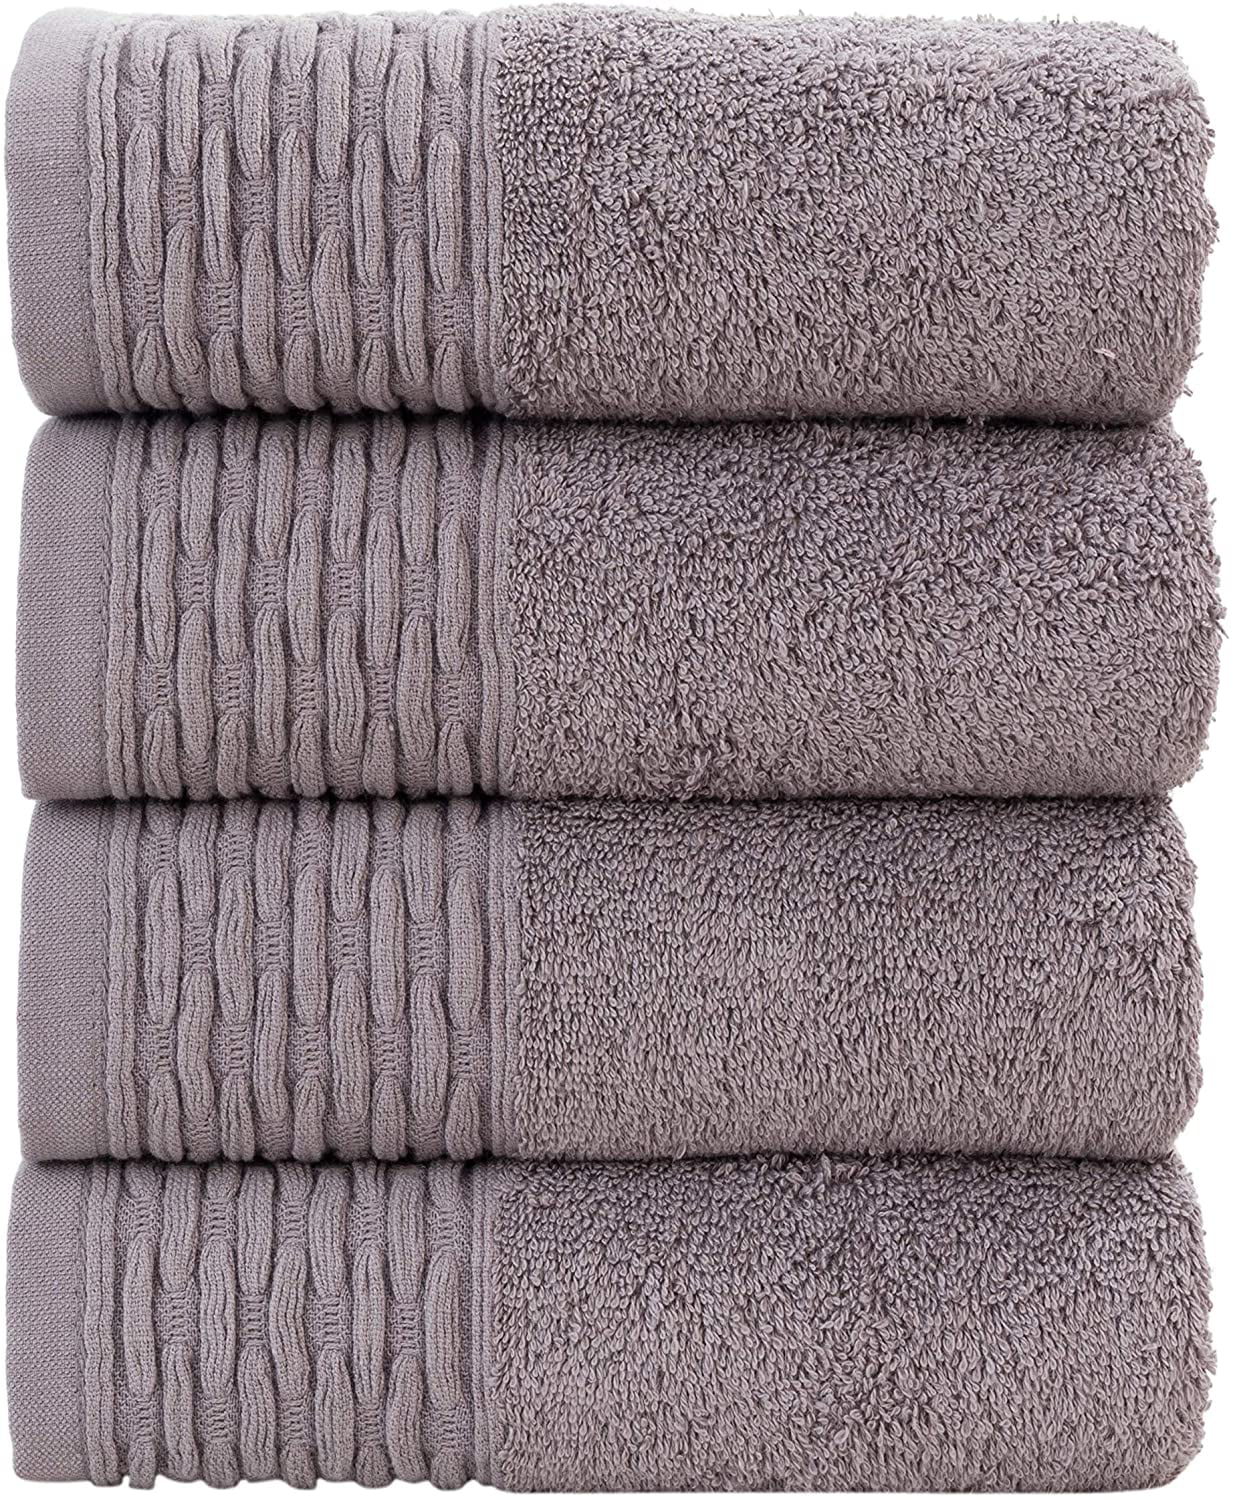 100% Cotton Super Soft Luxury 650 GSM Hand Towel Towels Bath Sheet Bale Sets 